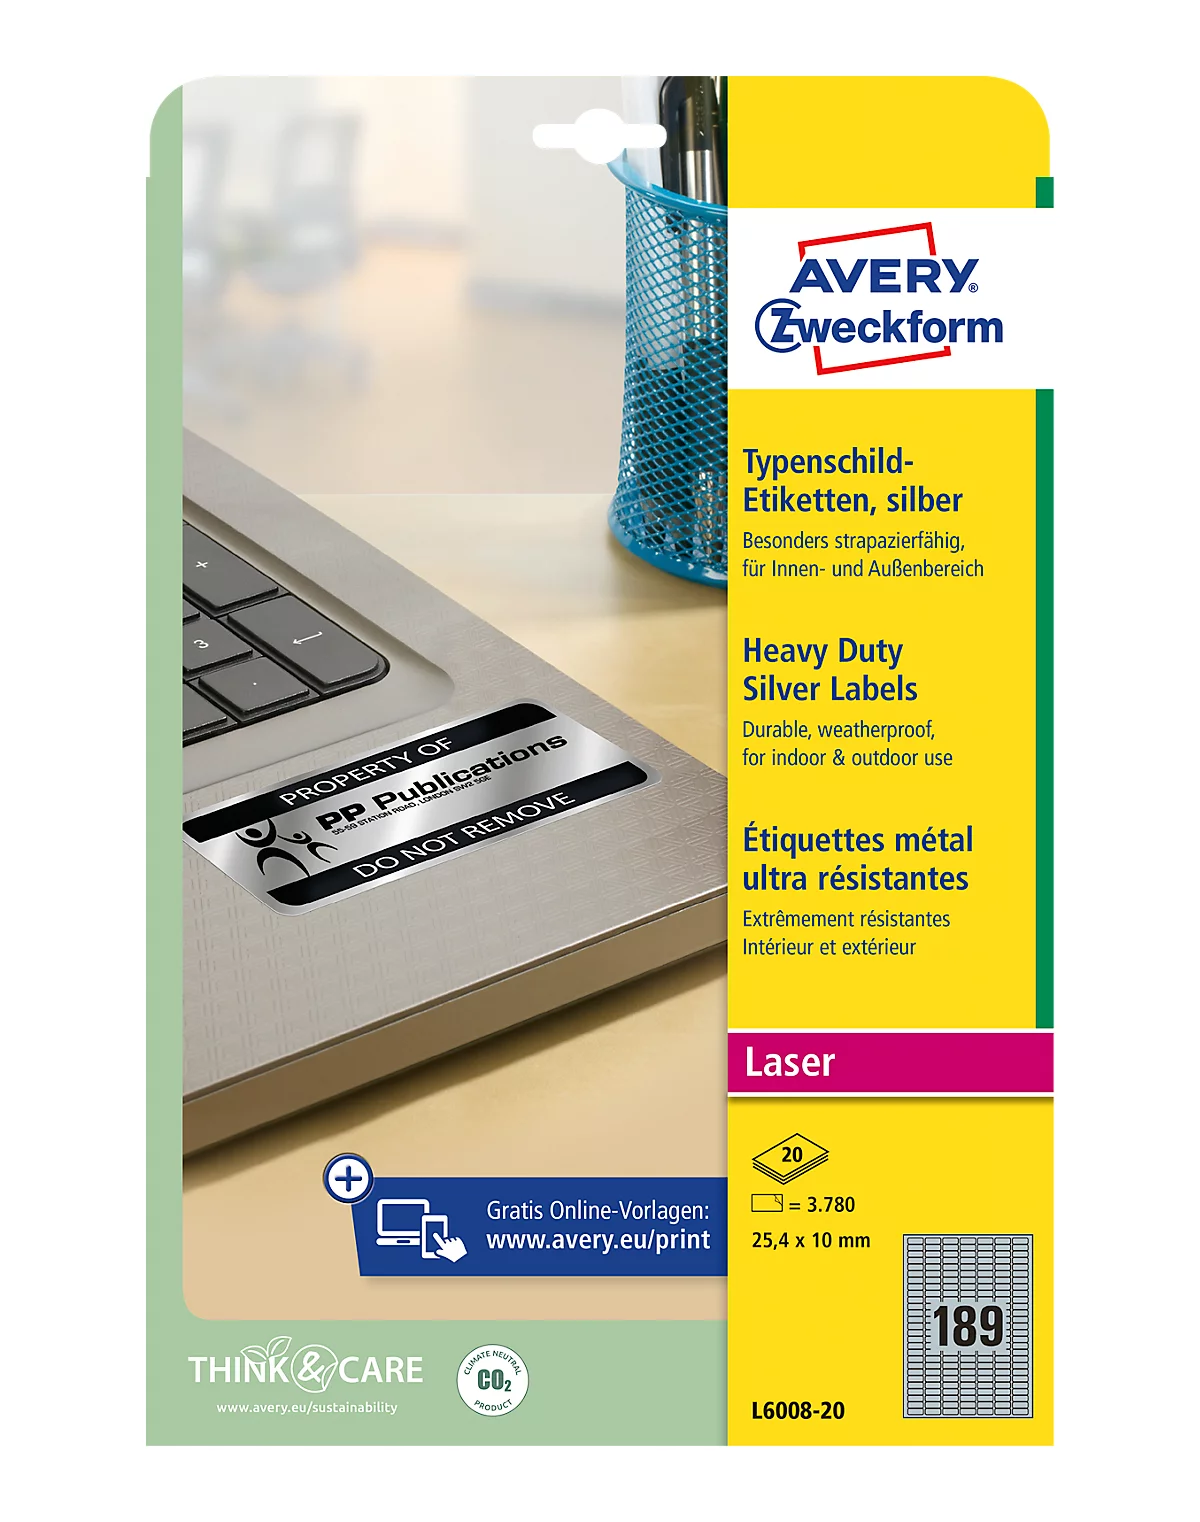 Avery Zweckform Typenschildetiketten L6008-20, extrem robust, geeignet für SW-Laserdrucker, 25,4 x 10 mm, 3780 Stück/20 A4-Bogen, Polyesterfolie, silber